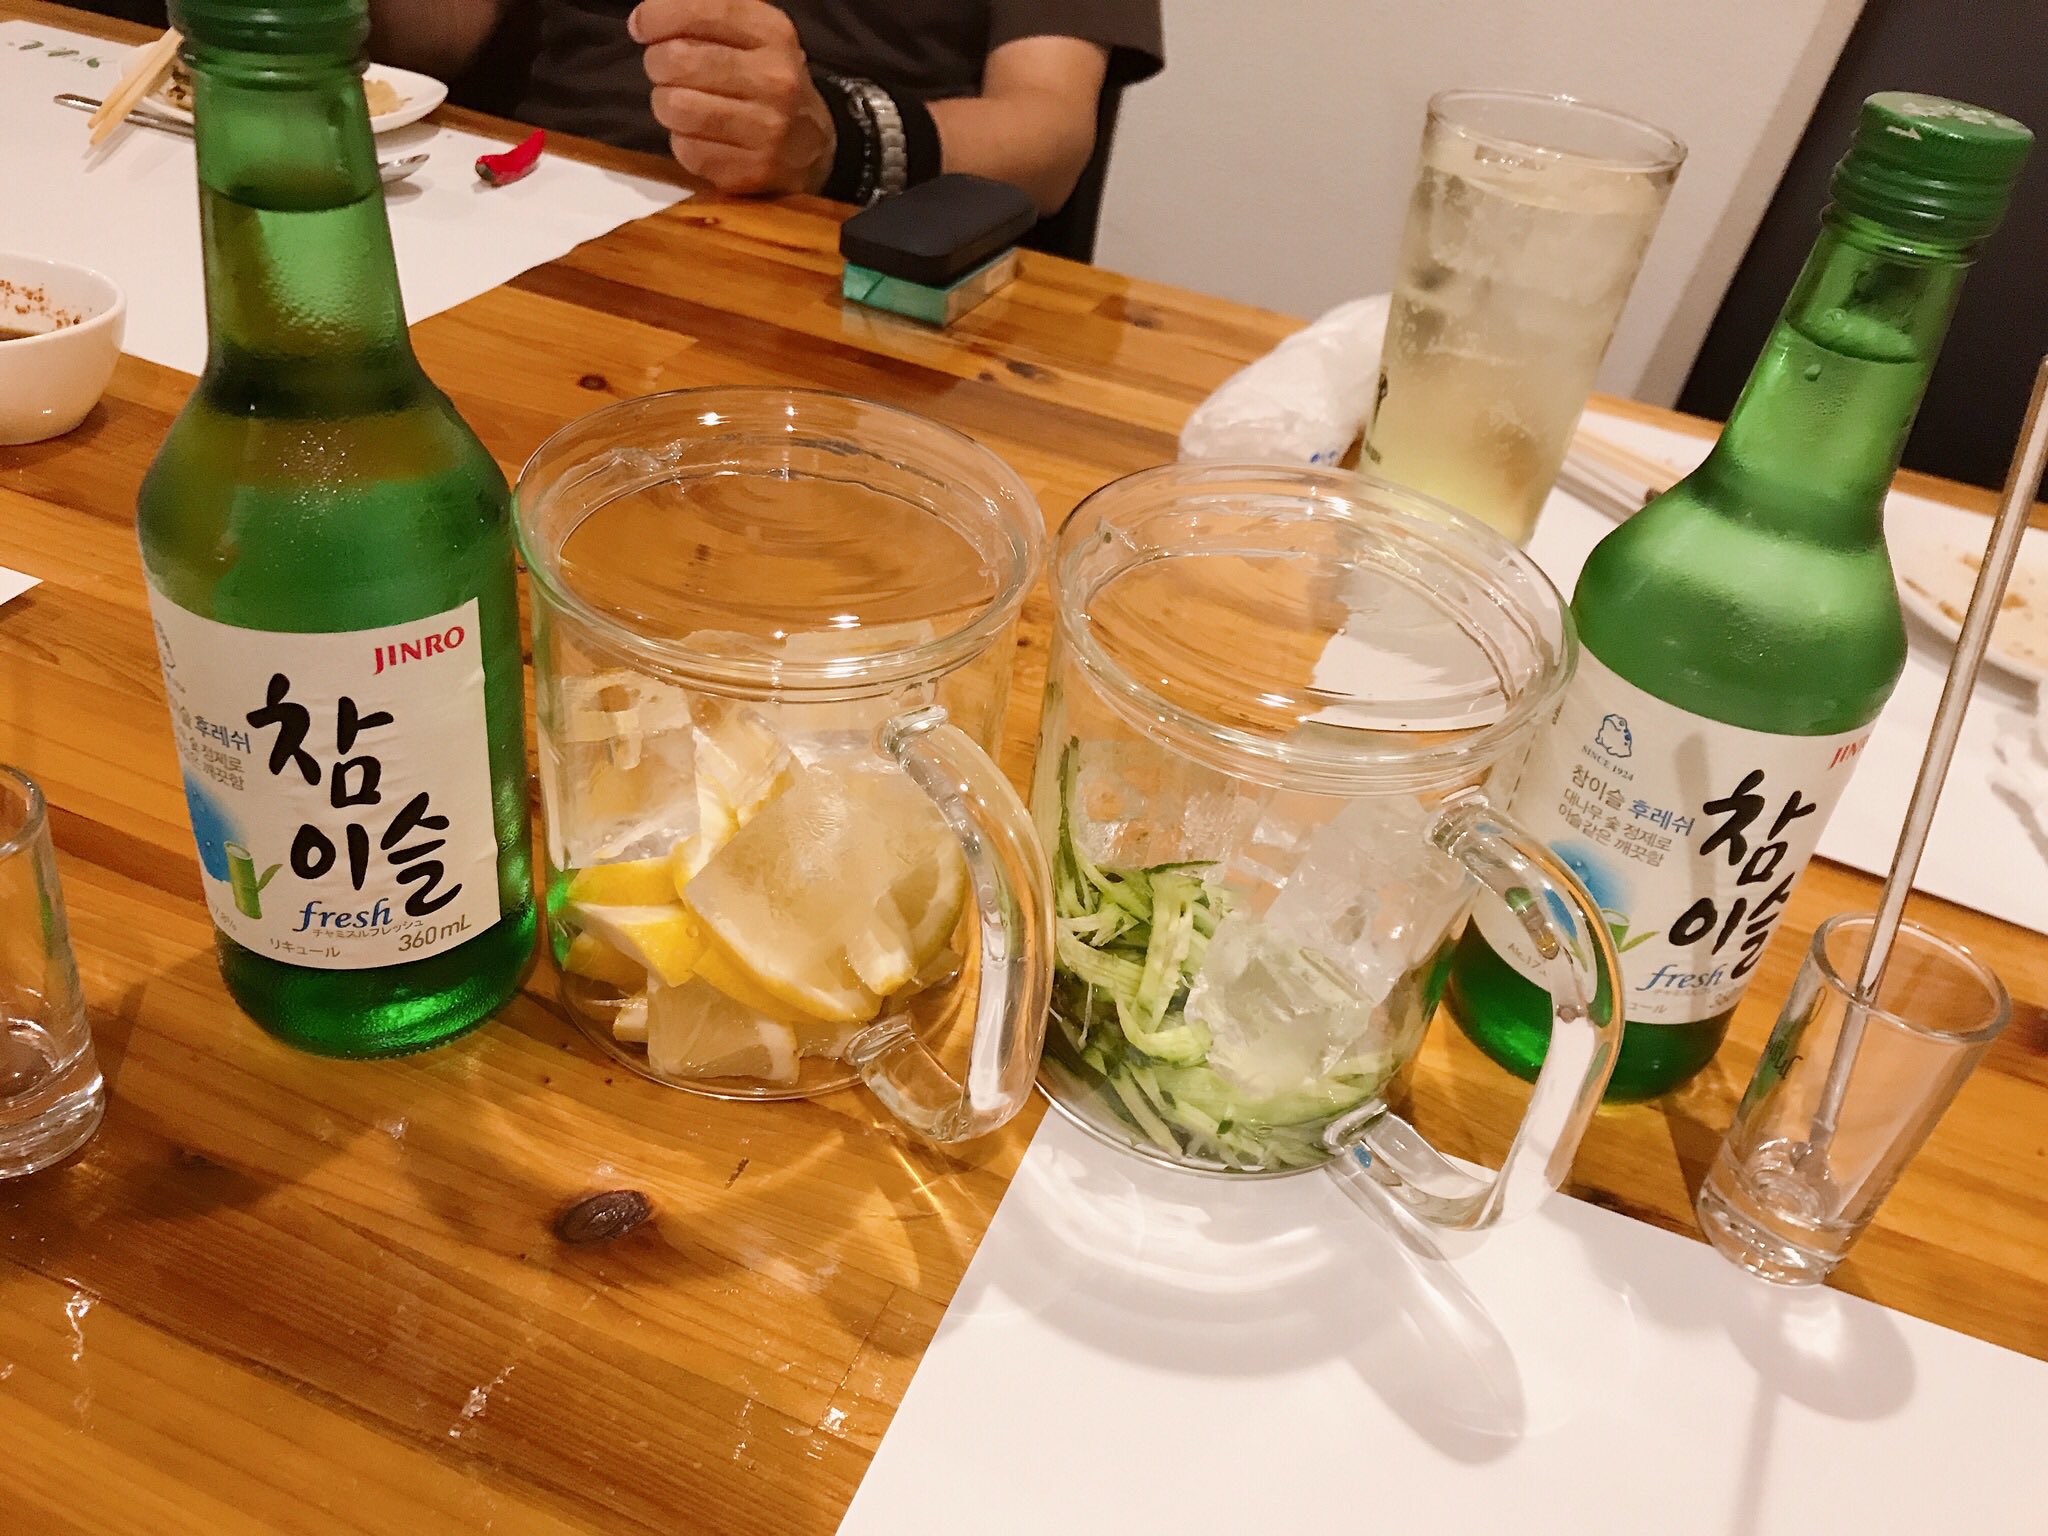 تويتر えりな على تويتر 韓国焼酎 チャミスル レモンと きゅうりに入れて飲むんだって 上手い T Co T7aotuzcci